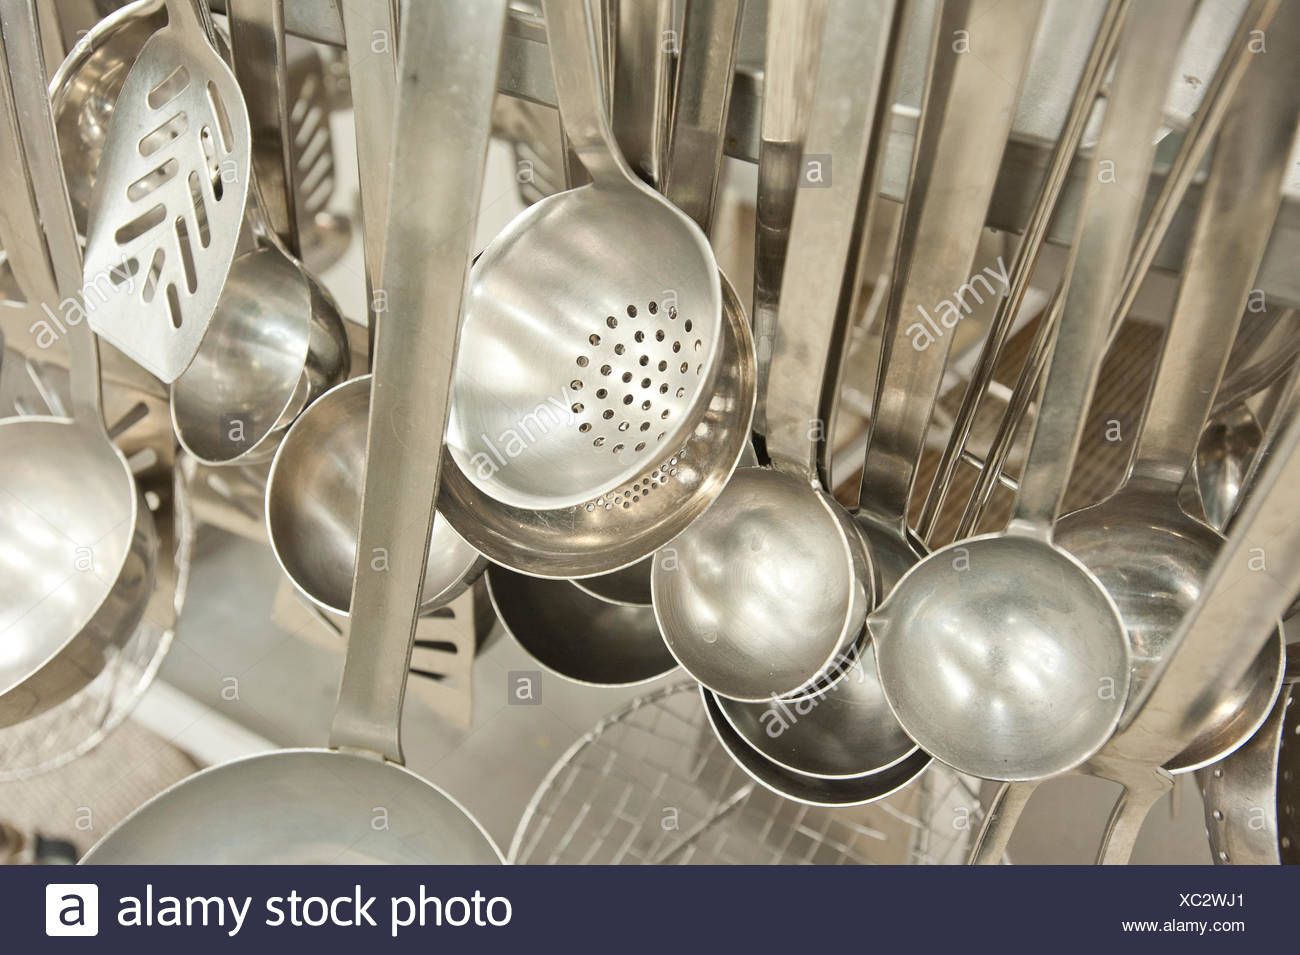 Cucharones Espumadera Utensilios De Cocina En Una Cocina Industrial Alemania Fotografia De Stock Alamy